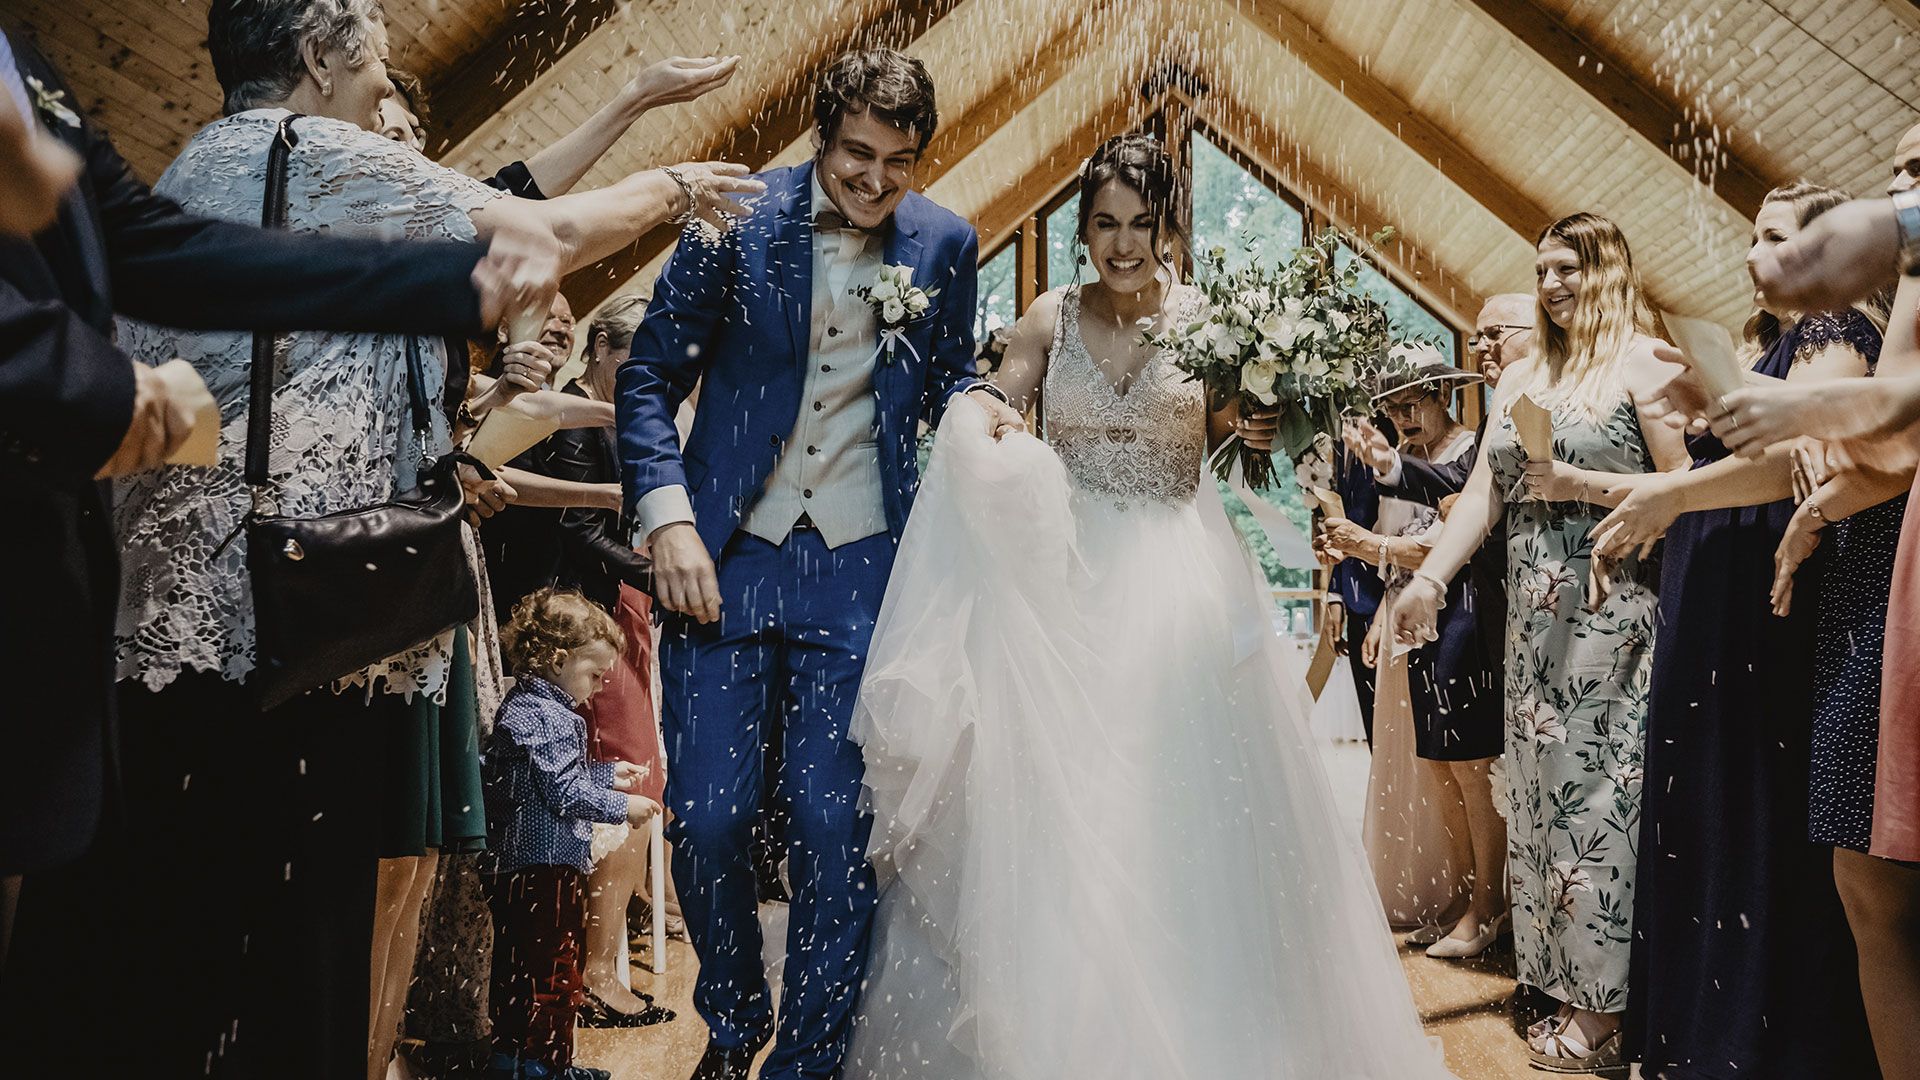 Promotional image for Можно ли христианам ходить на мирские свадьбы?